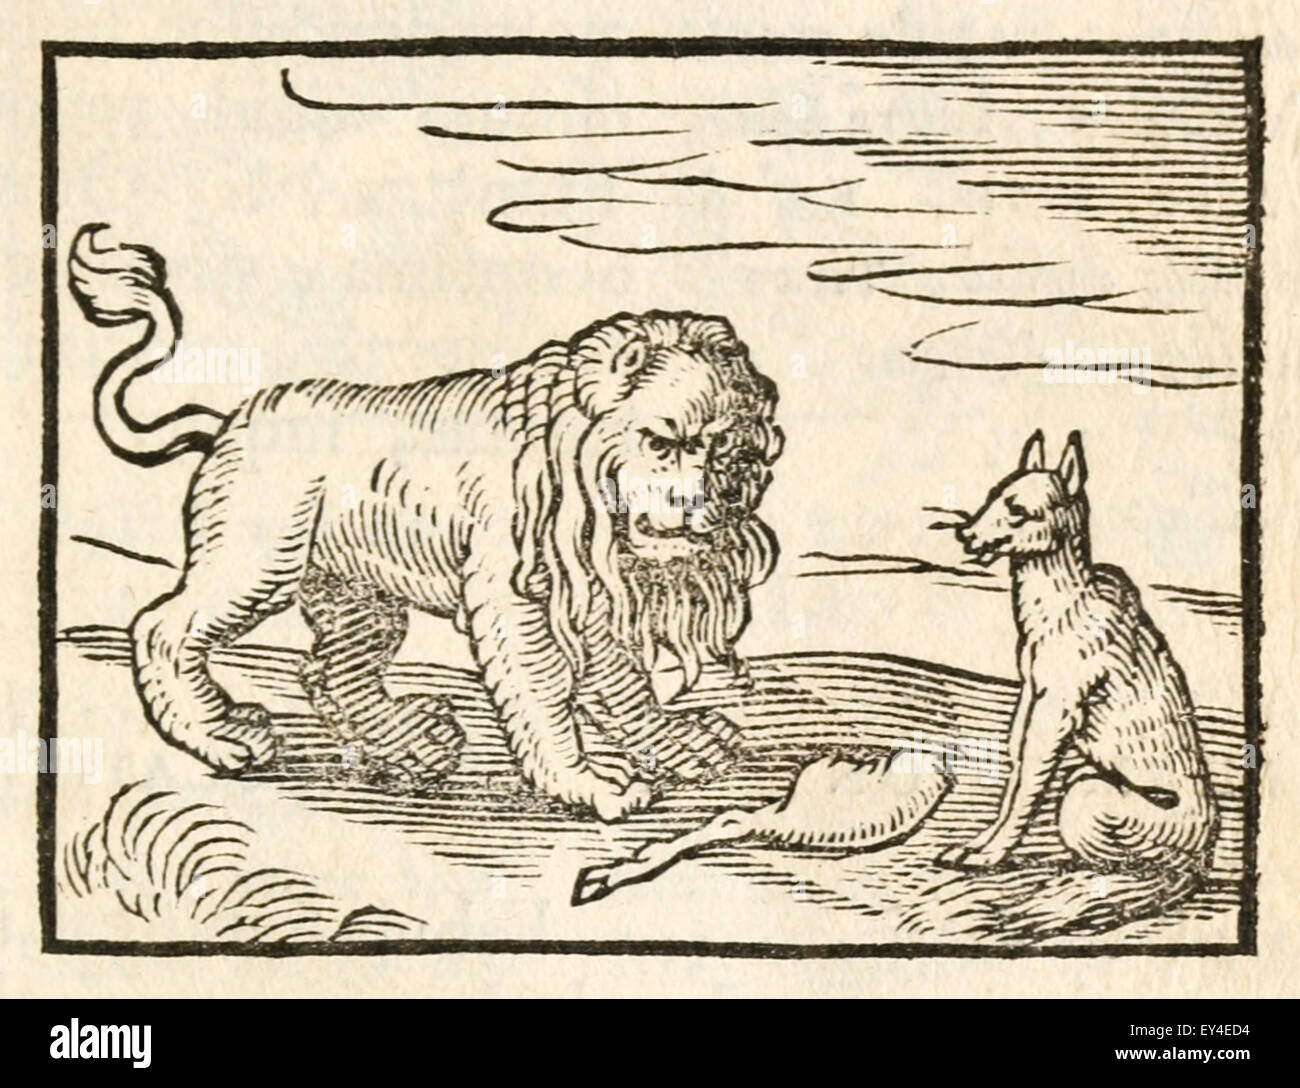 "Der Löwe und der Fuchs" Fabel von Aesop (ca. 600). 17. Jahrhundert Holzschnitt Drucken zur Veranschaulichung Aesop Fabeln. Siehe Beschreibung für mehr Informationen. Stockfoto